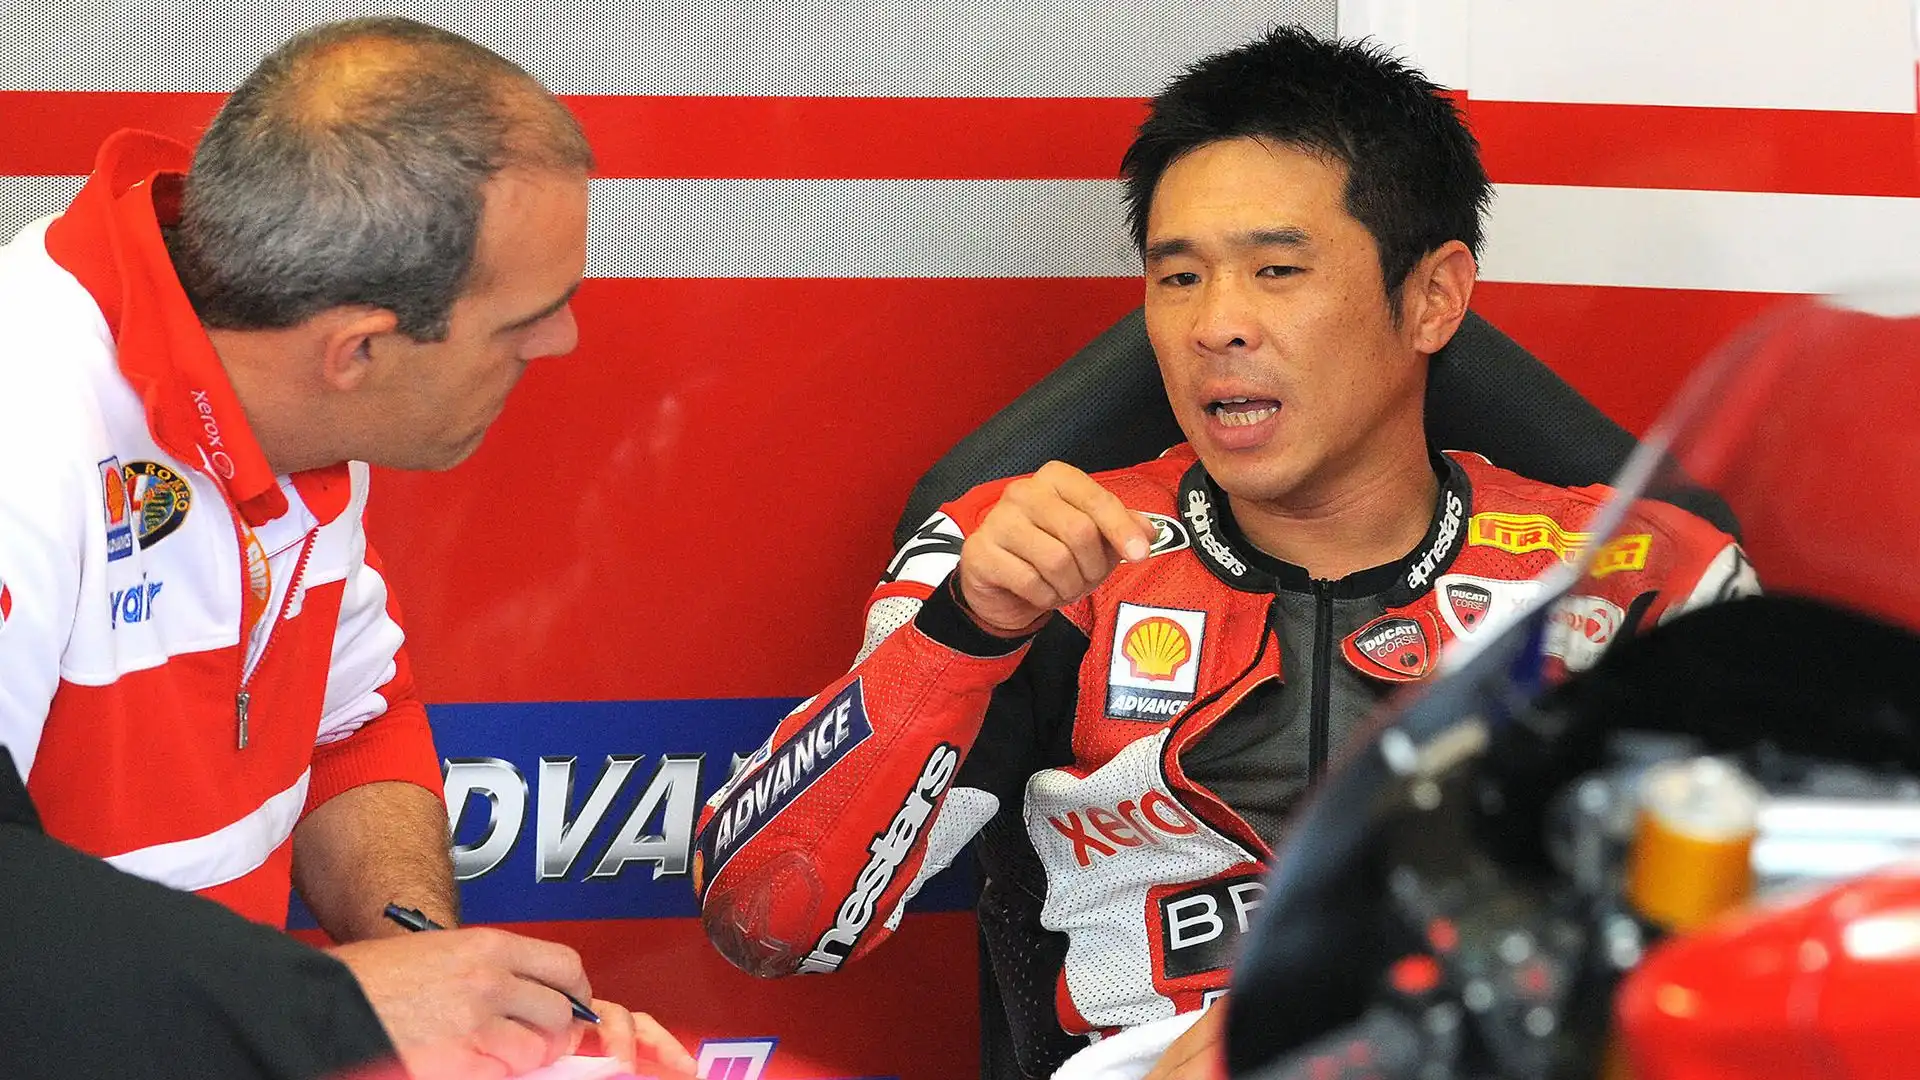 Noriyuki Haga: vicecampione del mondo in Superbike nel 2007 e nel 2009